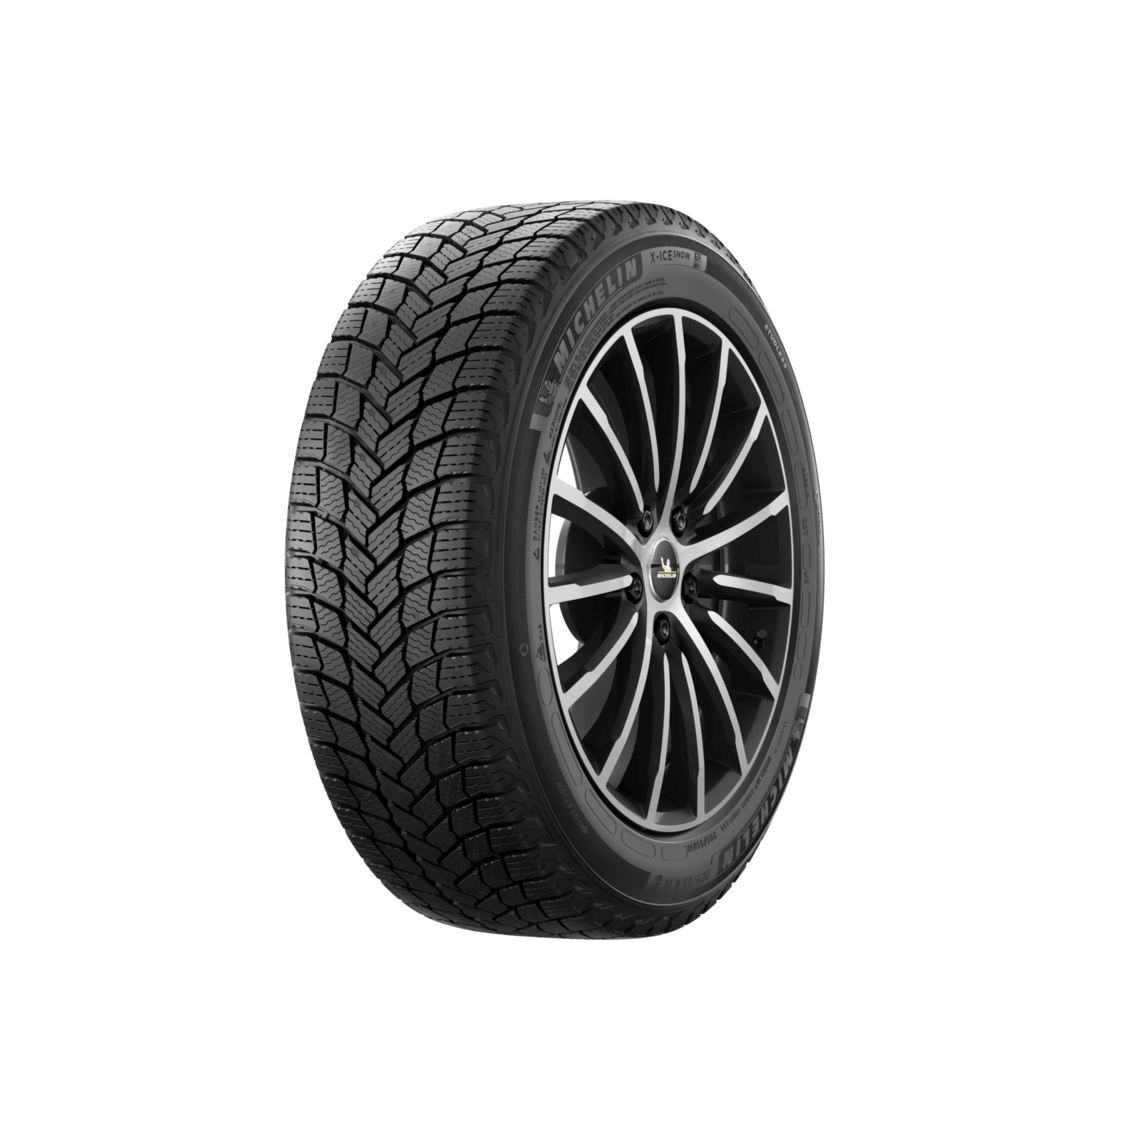 Thumb Michelin Gomme Nuove Michelin 235/60 R18 107T X-ICE SNOW SUV M+S pneumatici nuovi Invernale 0